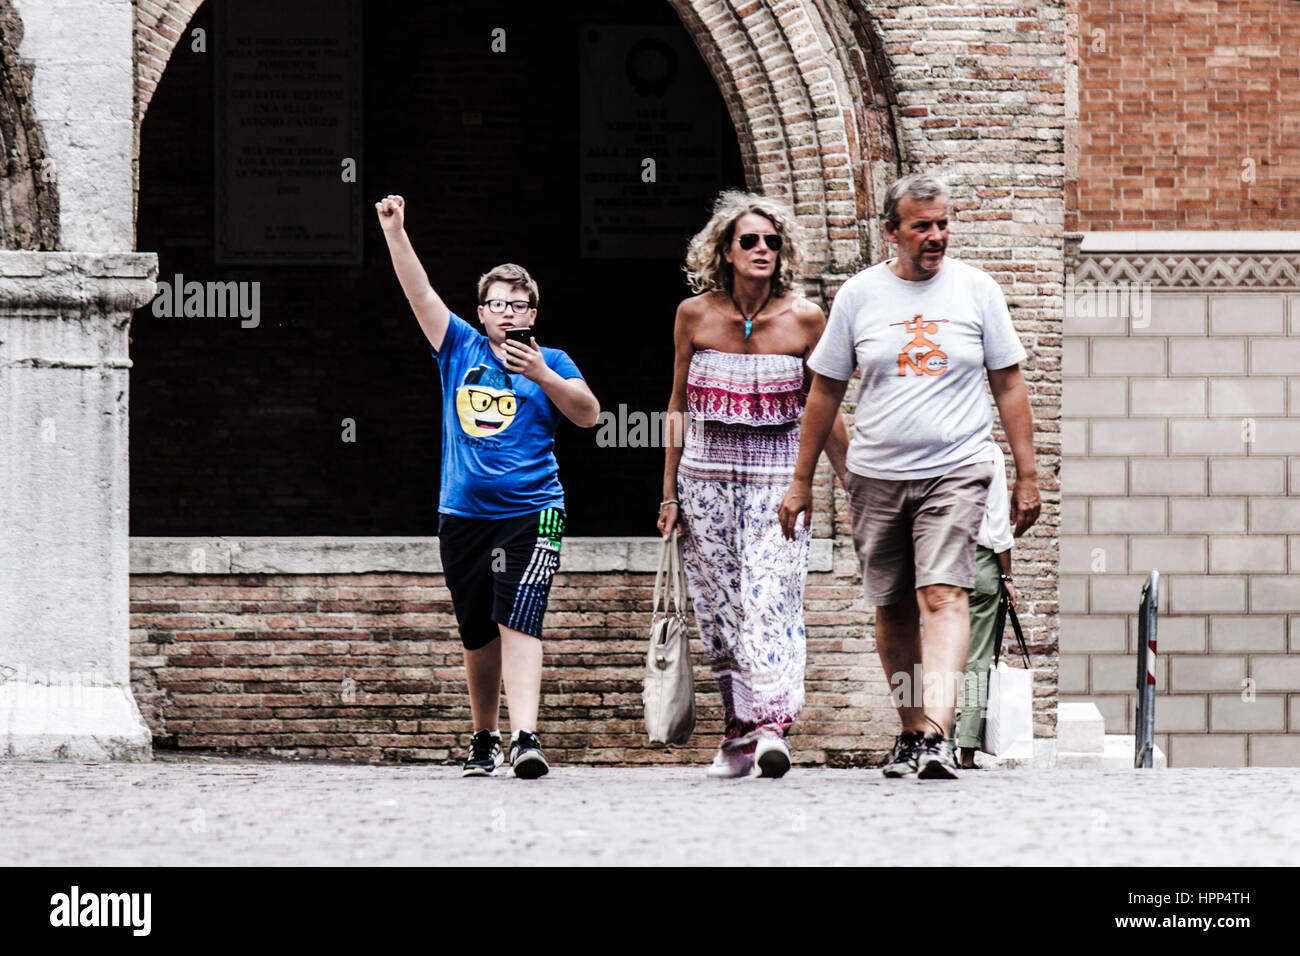 Une famille, c'est marcher dans la rue en Pordenone. Parents juste à pied, leur fils a gagné certains videogame en utilisant son téléphone Banque D'Images